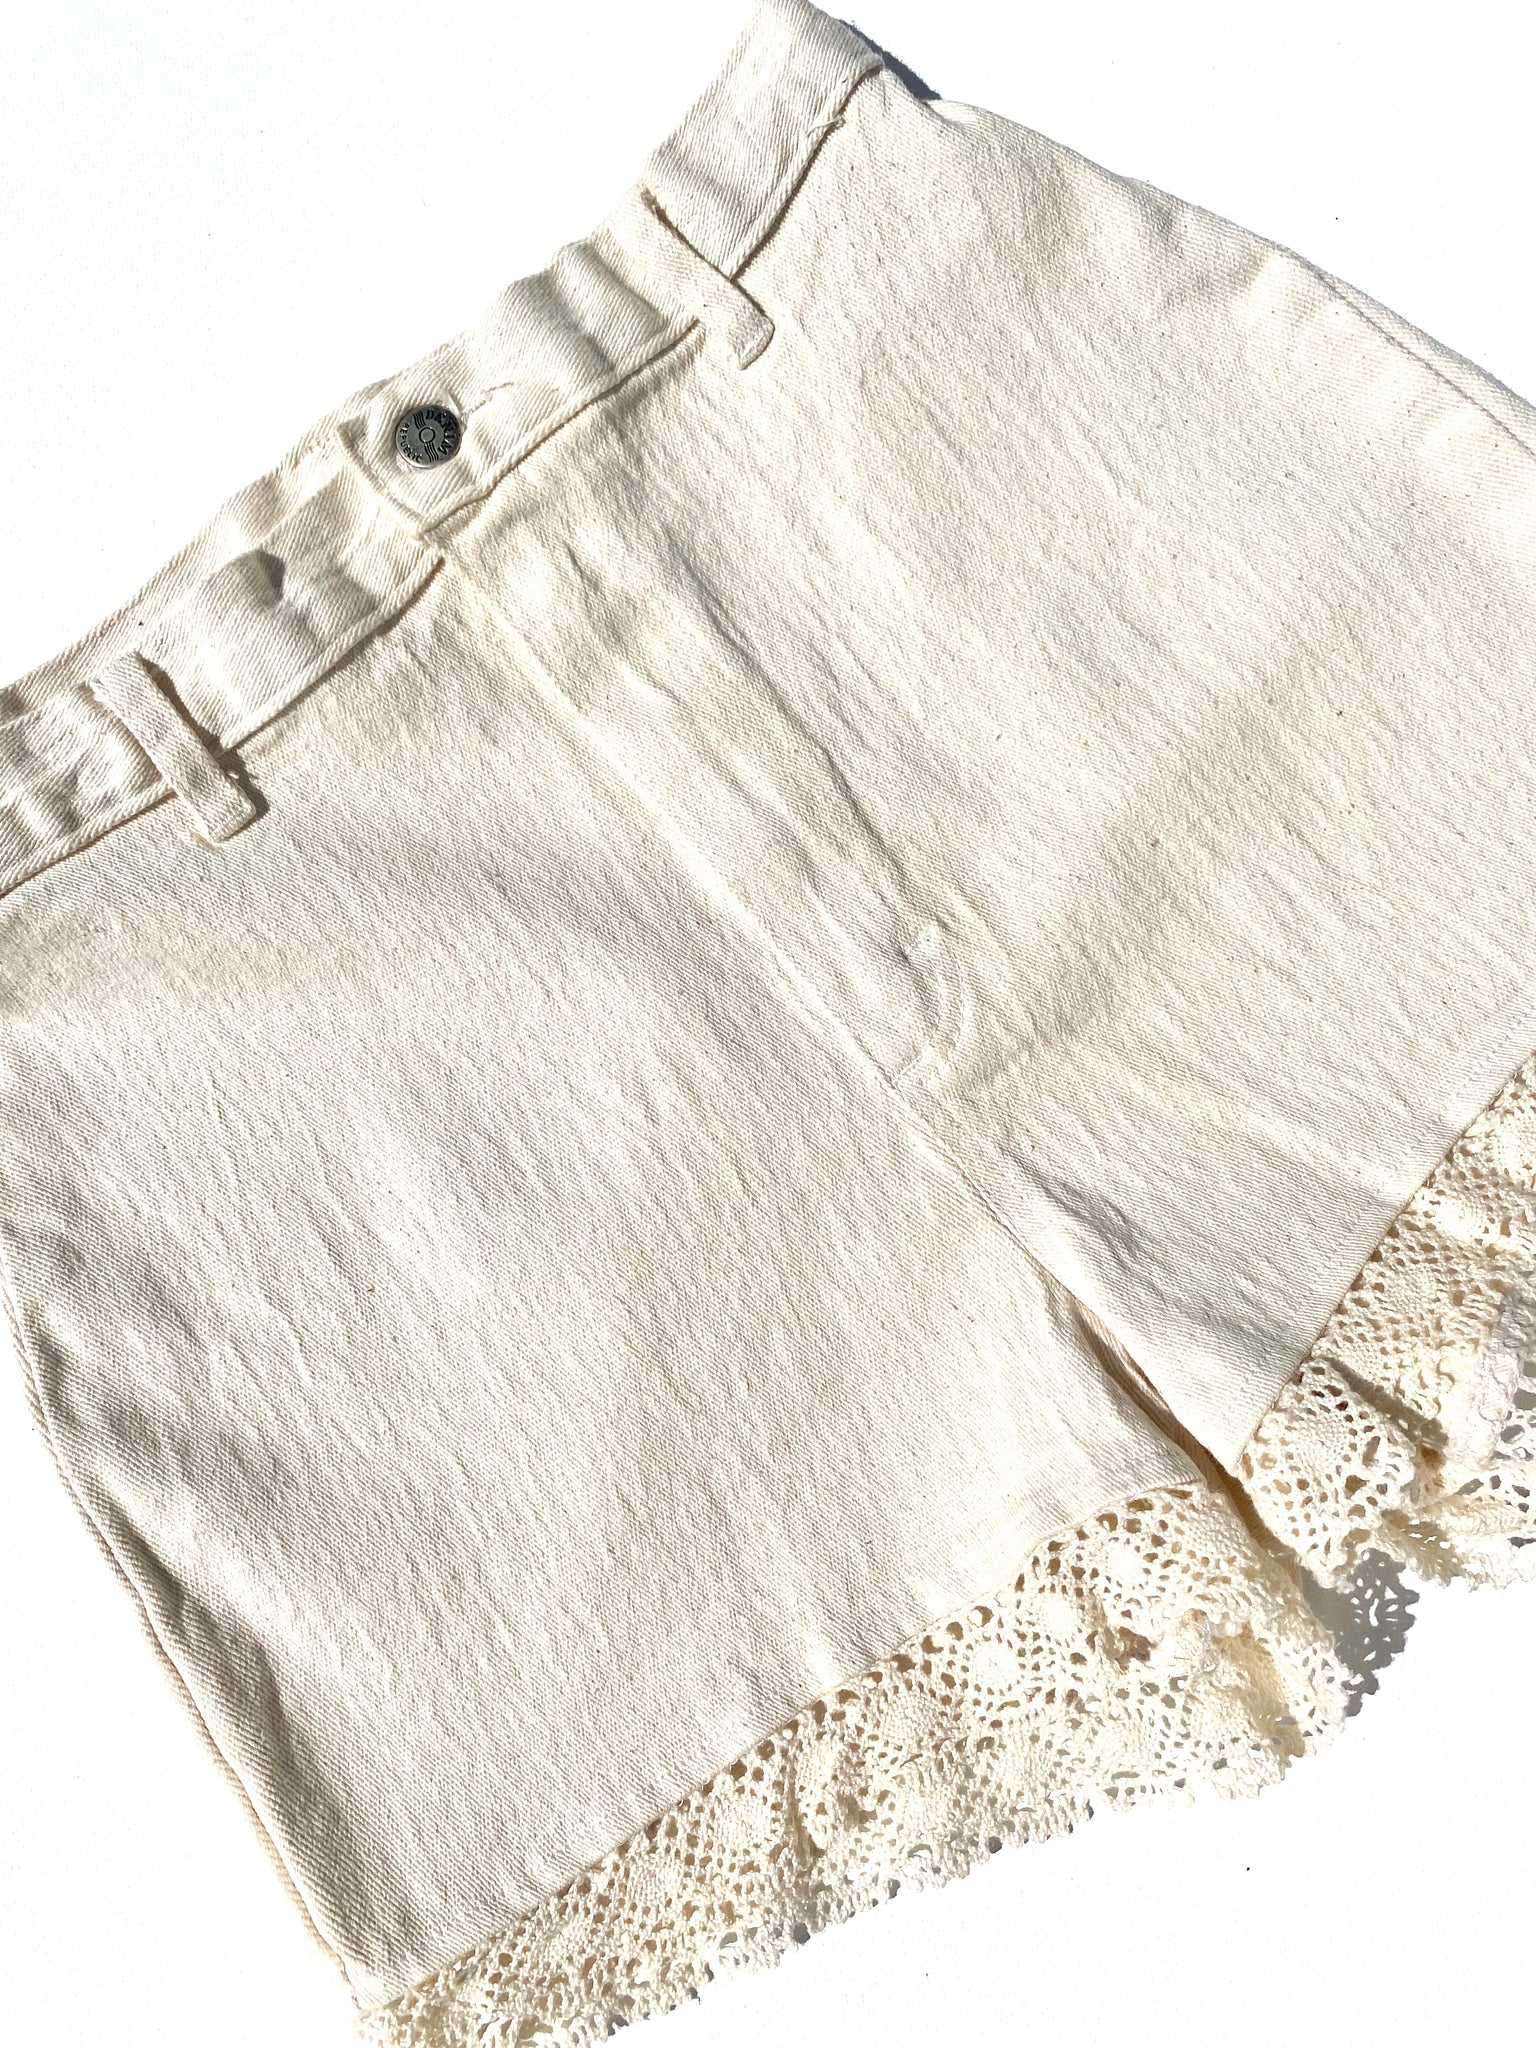 VINTAGE: Linen Shorts - Cream Lace